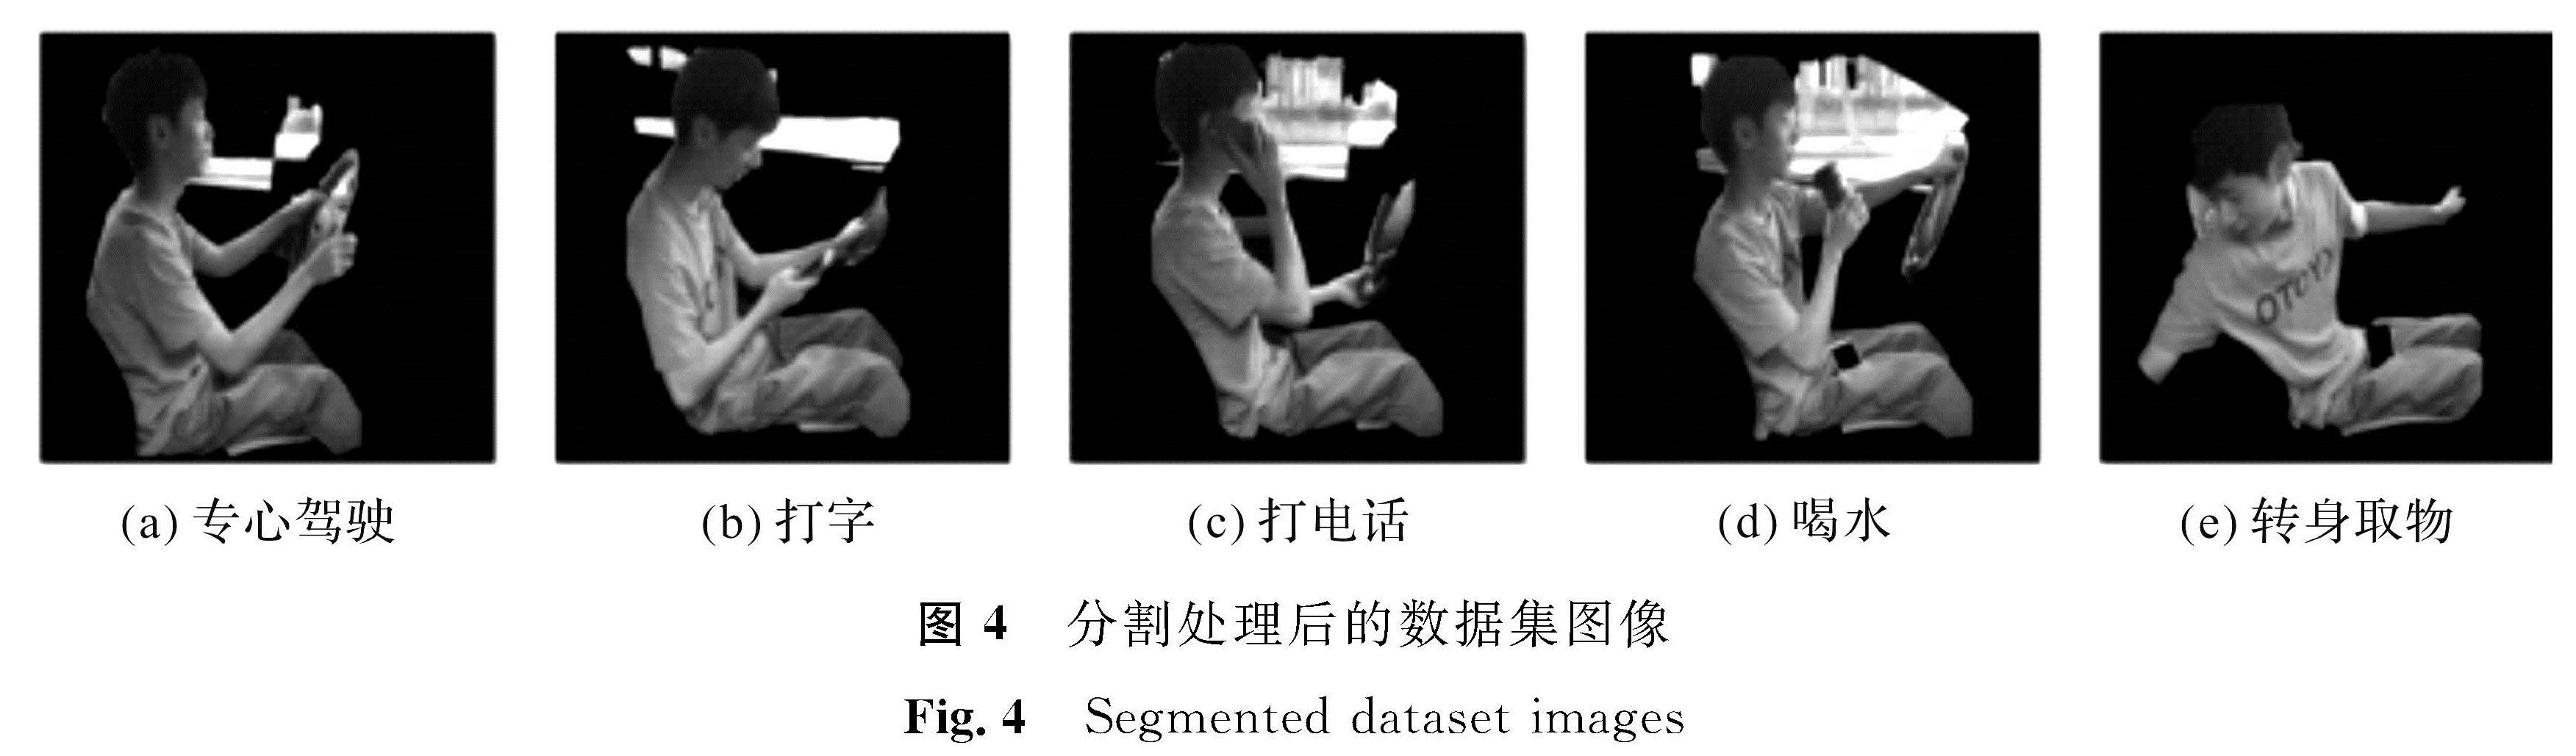 图4 分割处理后的数据集图像<br/>Fig.4 Segmented dataset images